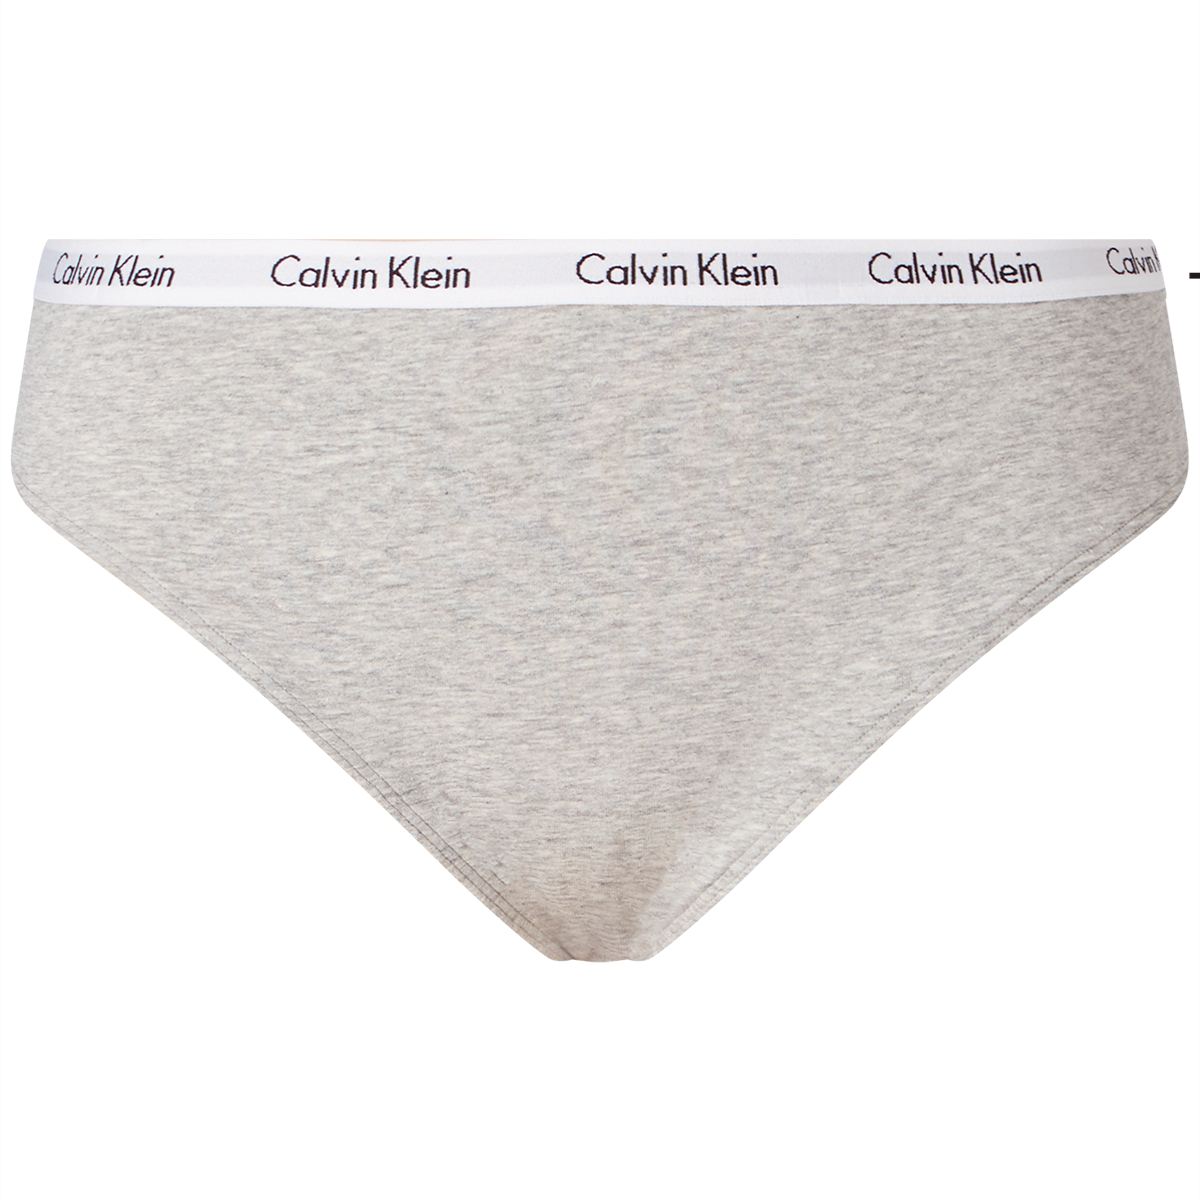 Calvin Klein Lingeri G-streng, Farve: Grå, Størrelse: XL, Dame